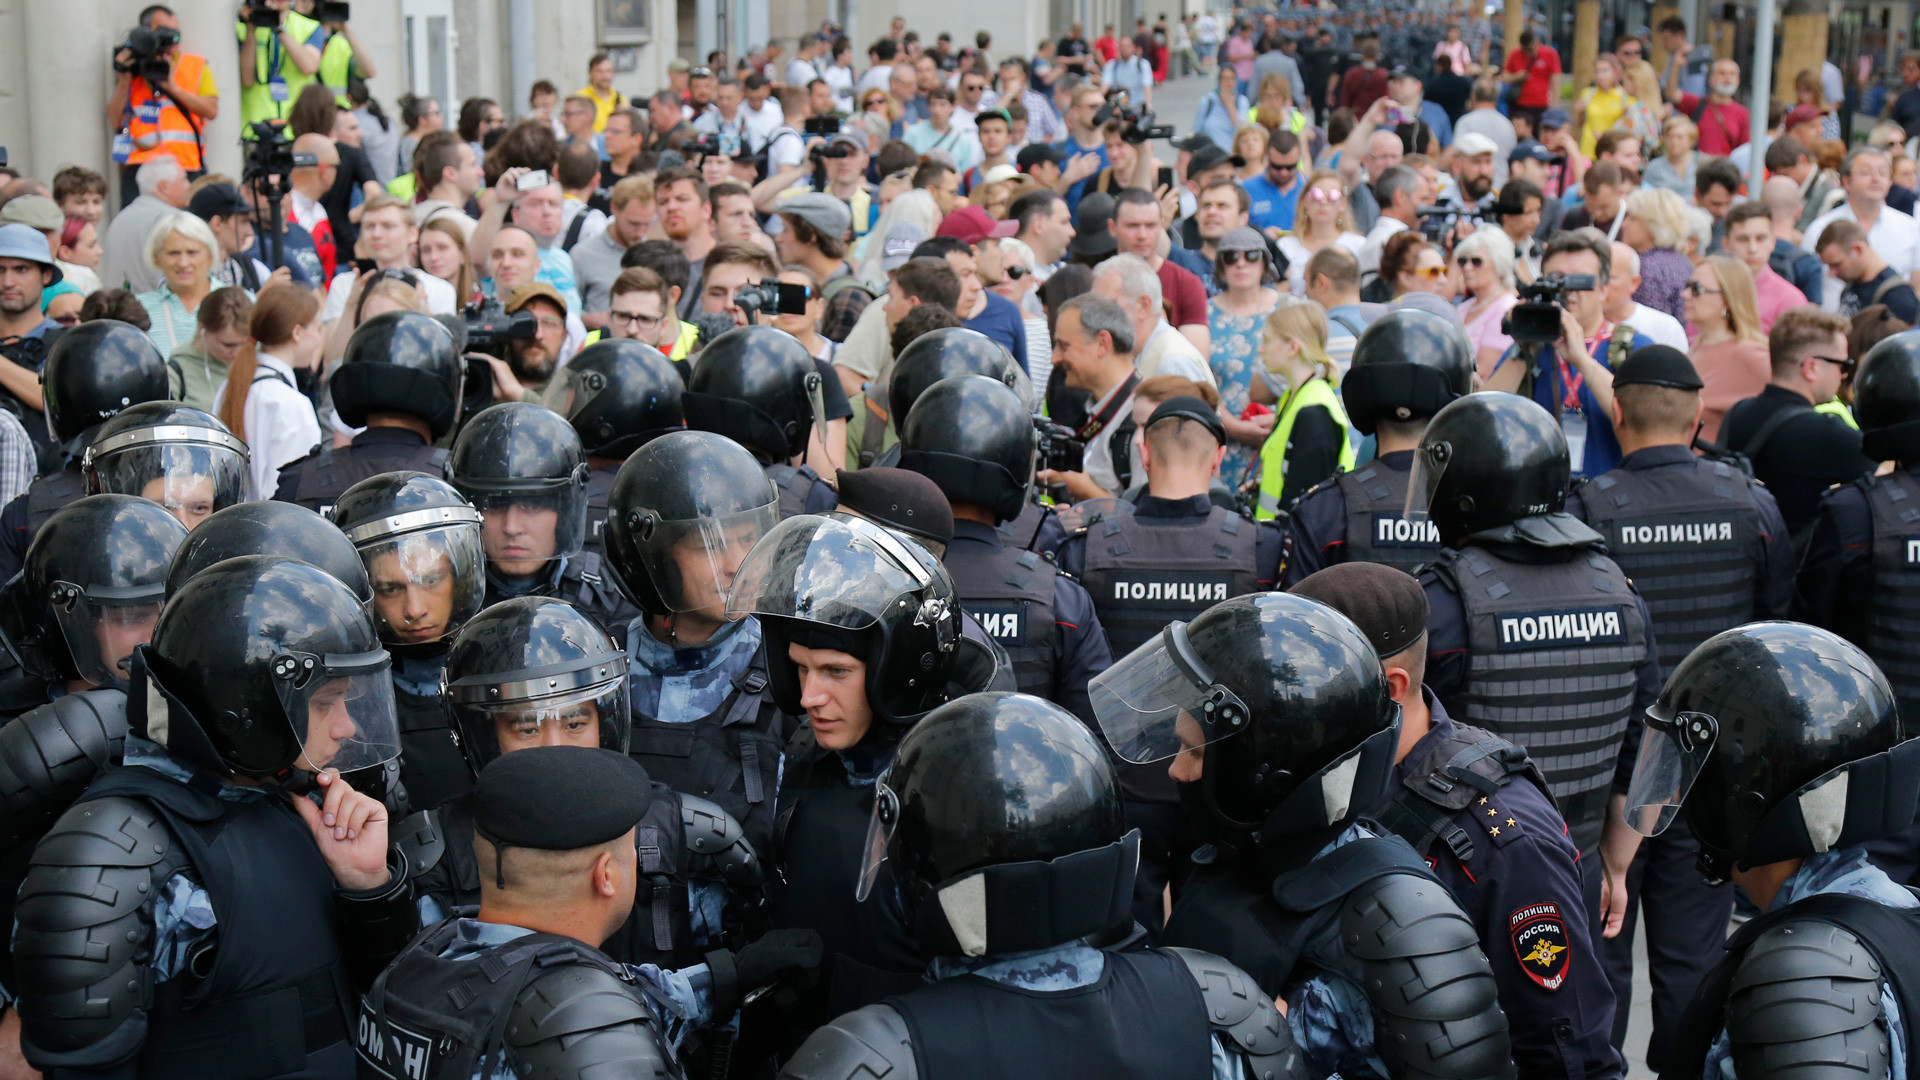 Митинг доклад. Митинг 27 июля 2019 в Москве. Массовые протесты в России. Массовые беспорядки полиция.